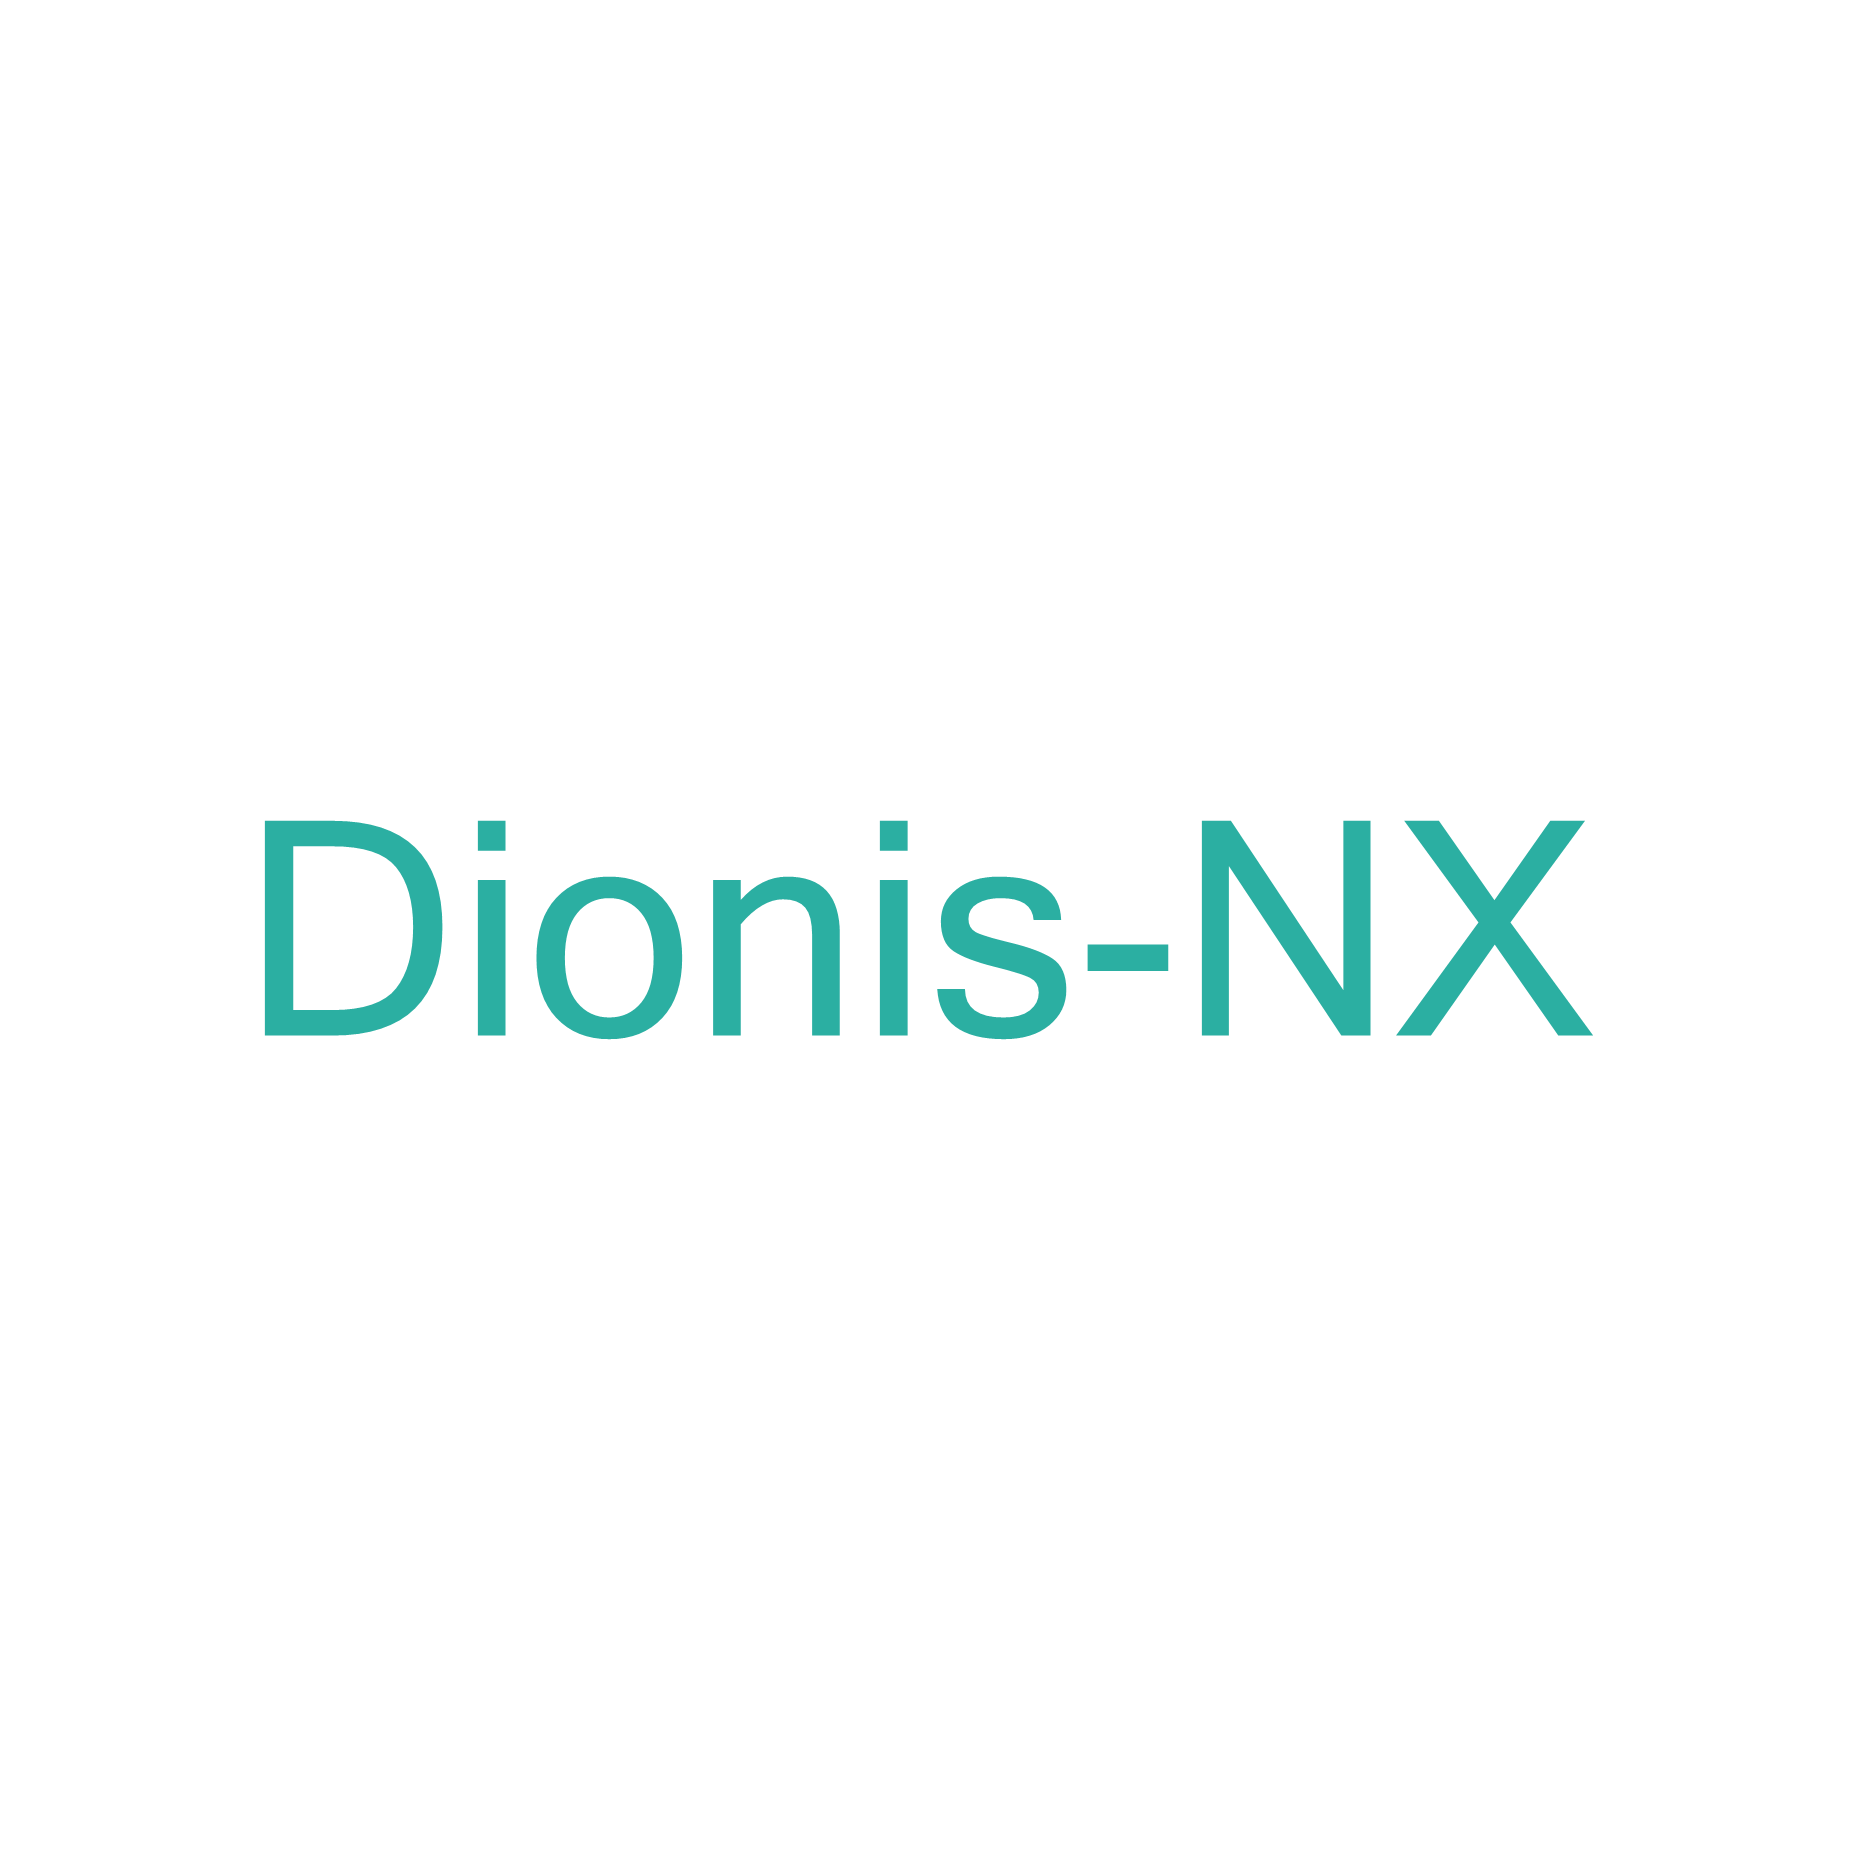 Dionis-NX